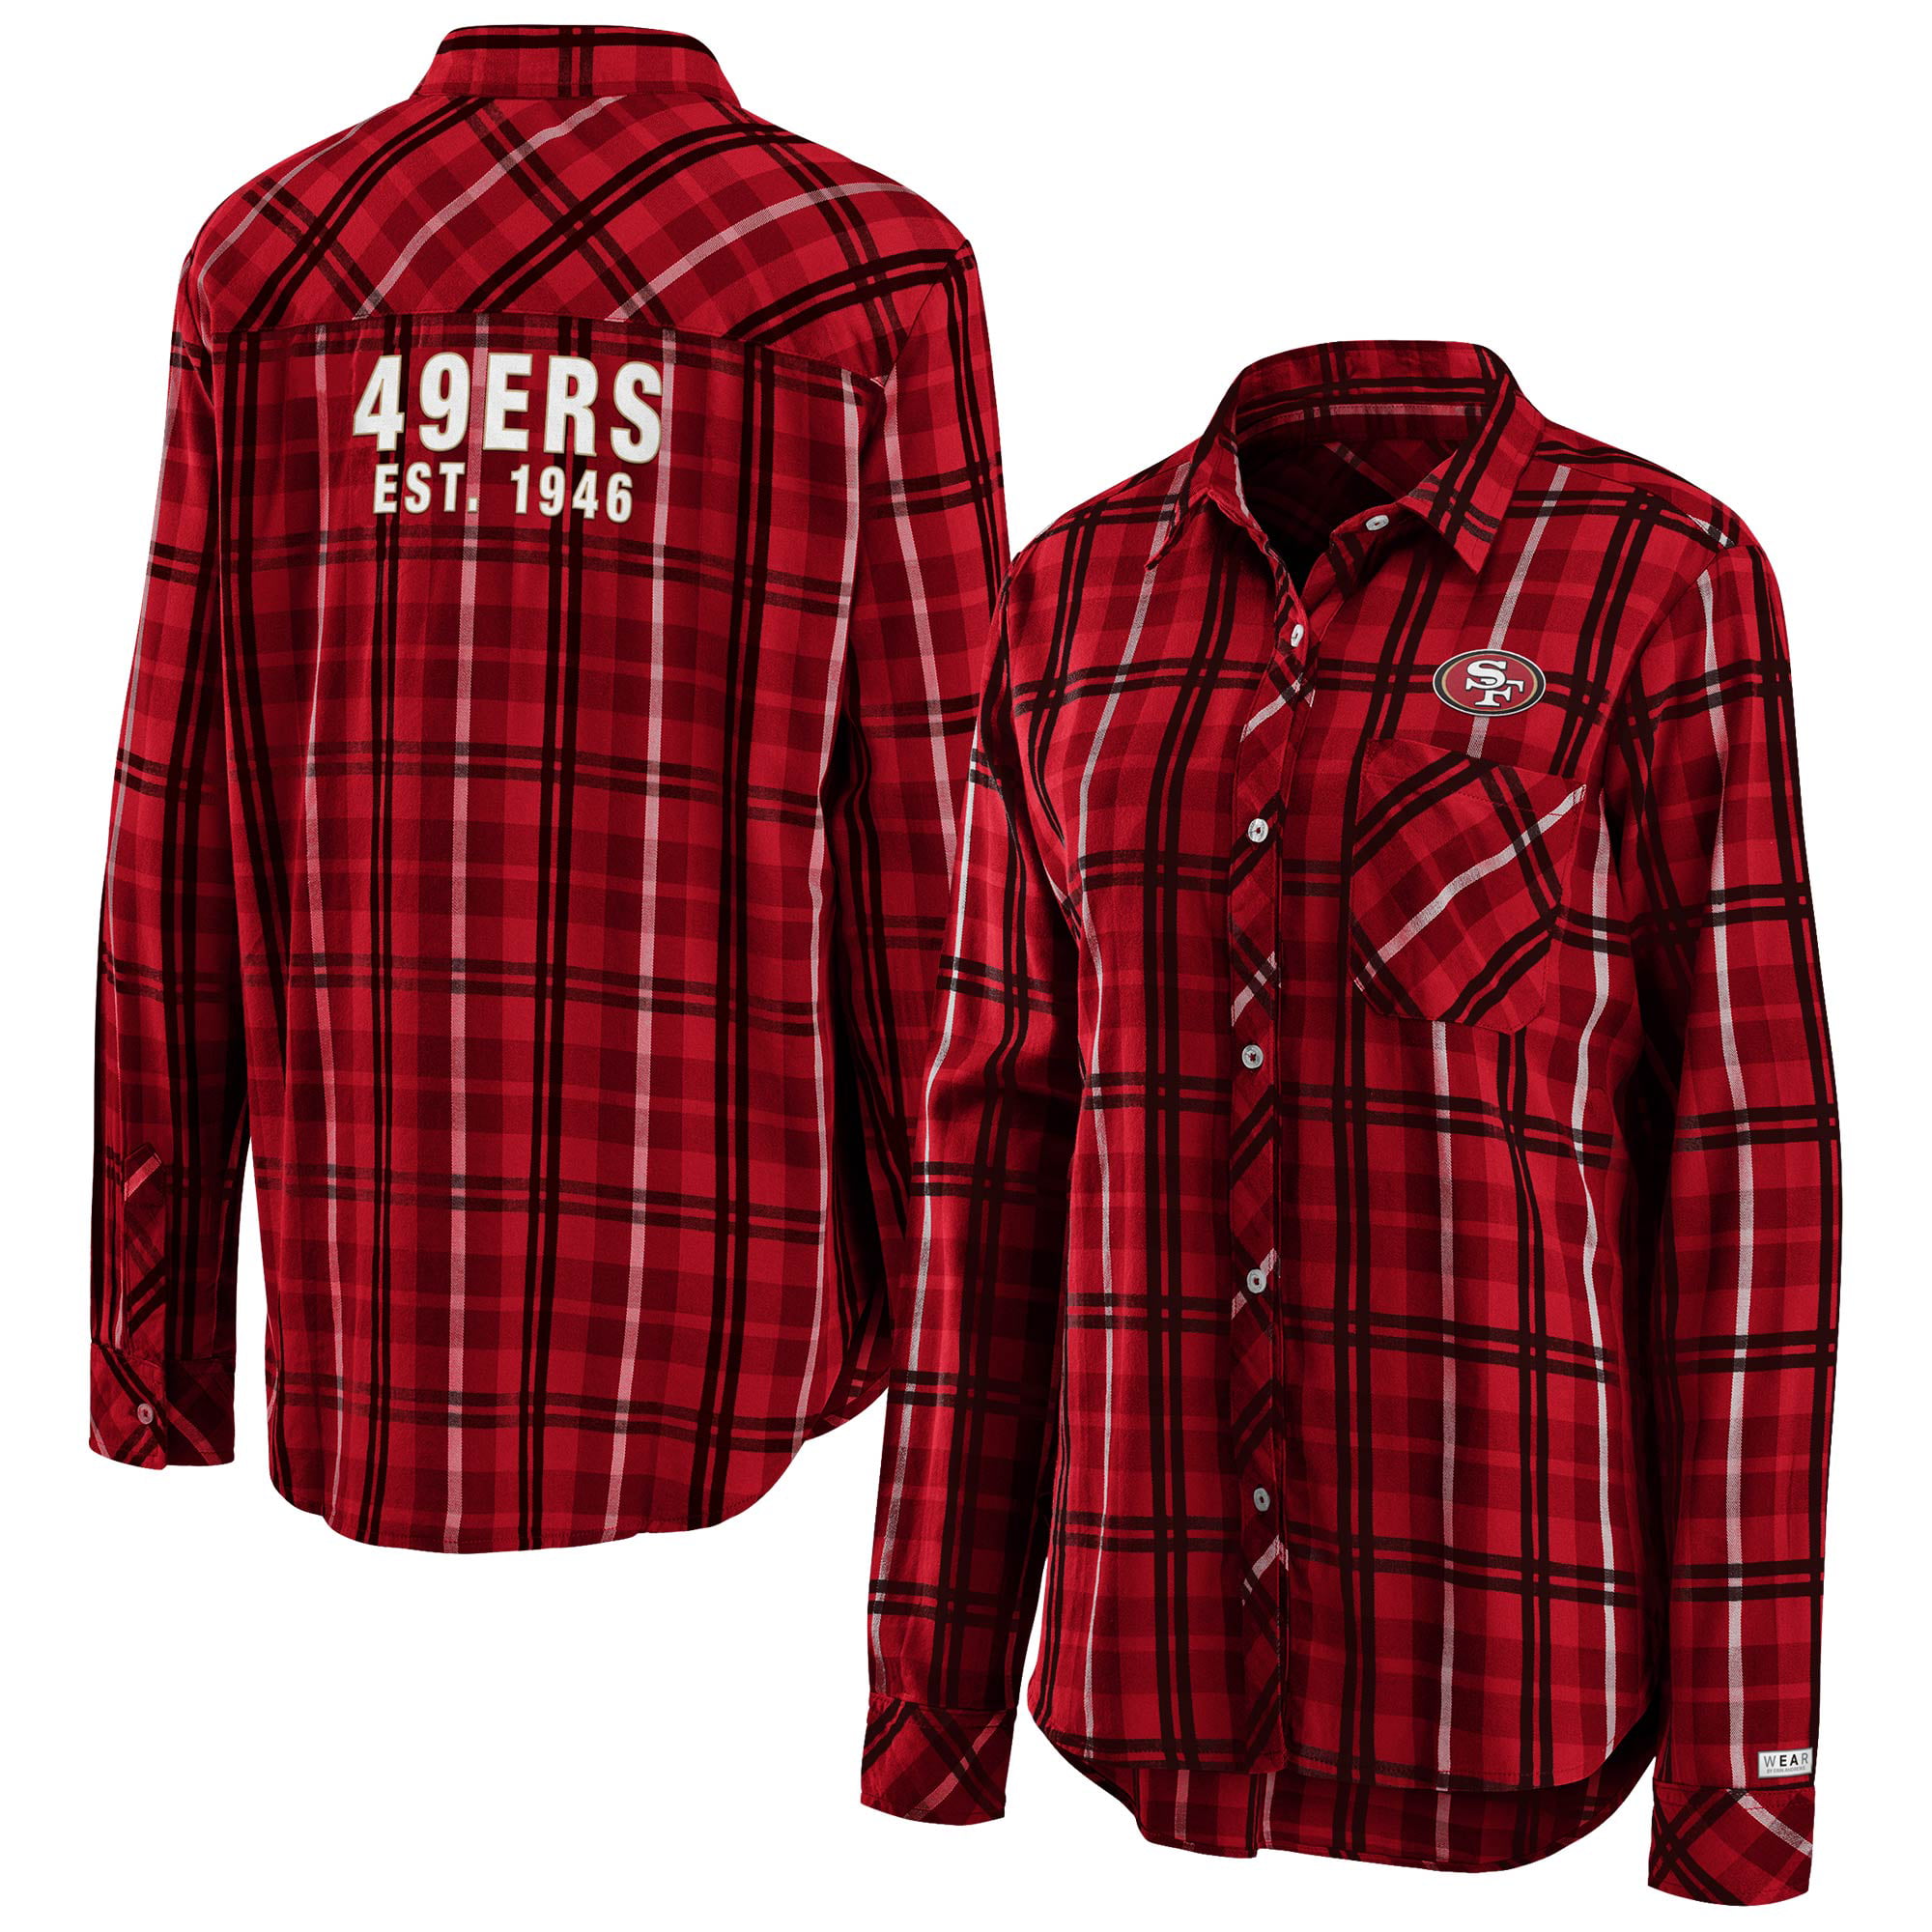 49ers dress shirt